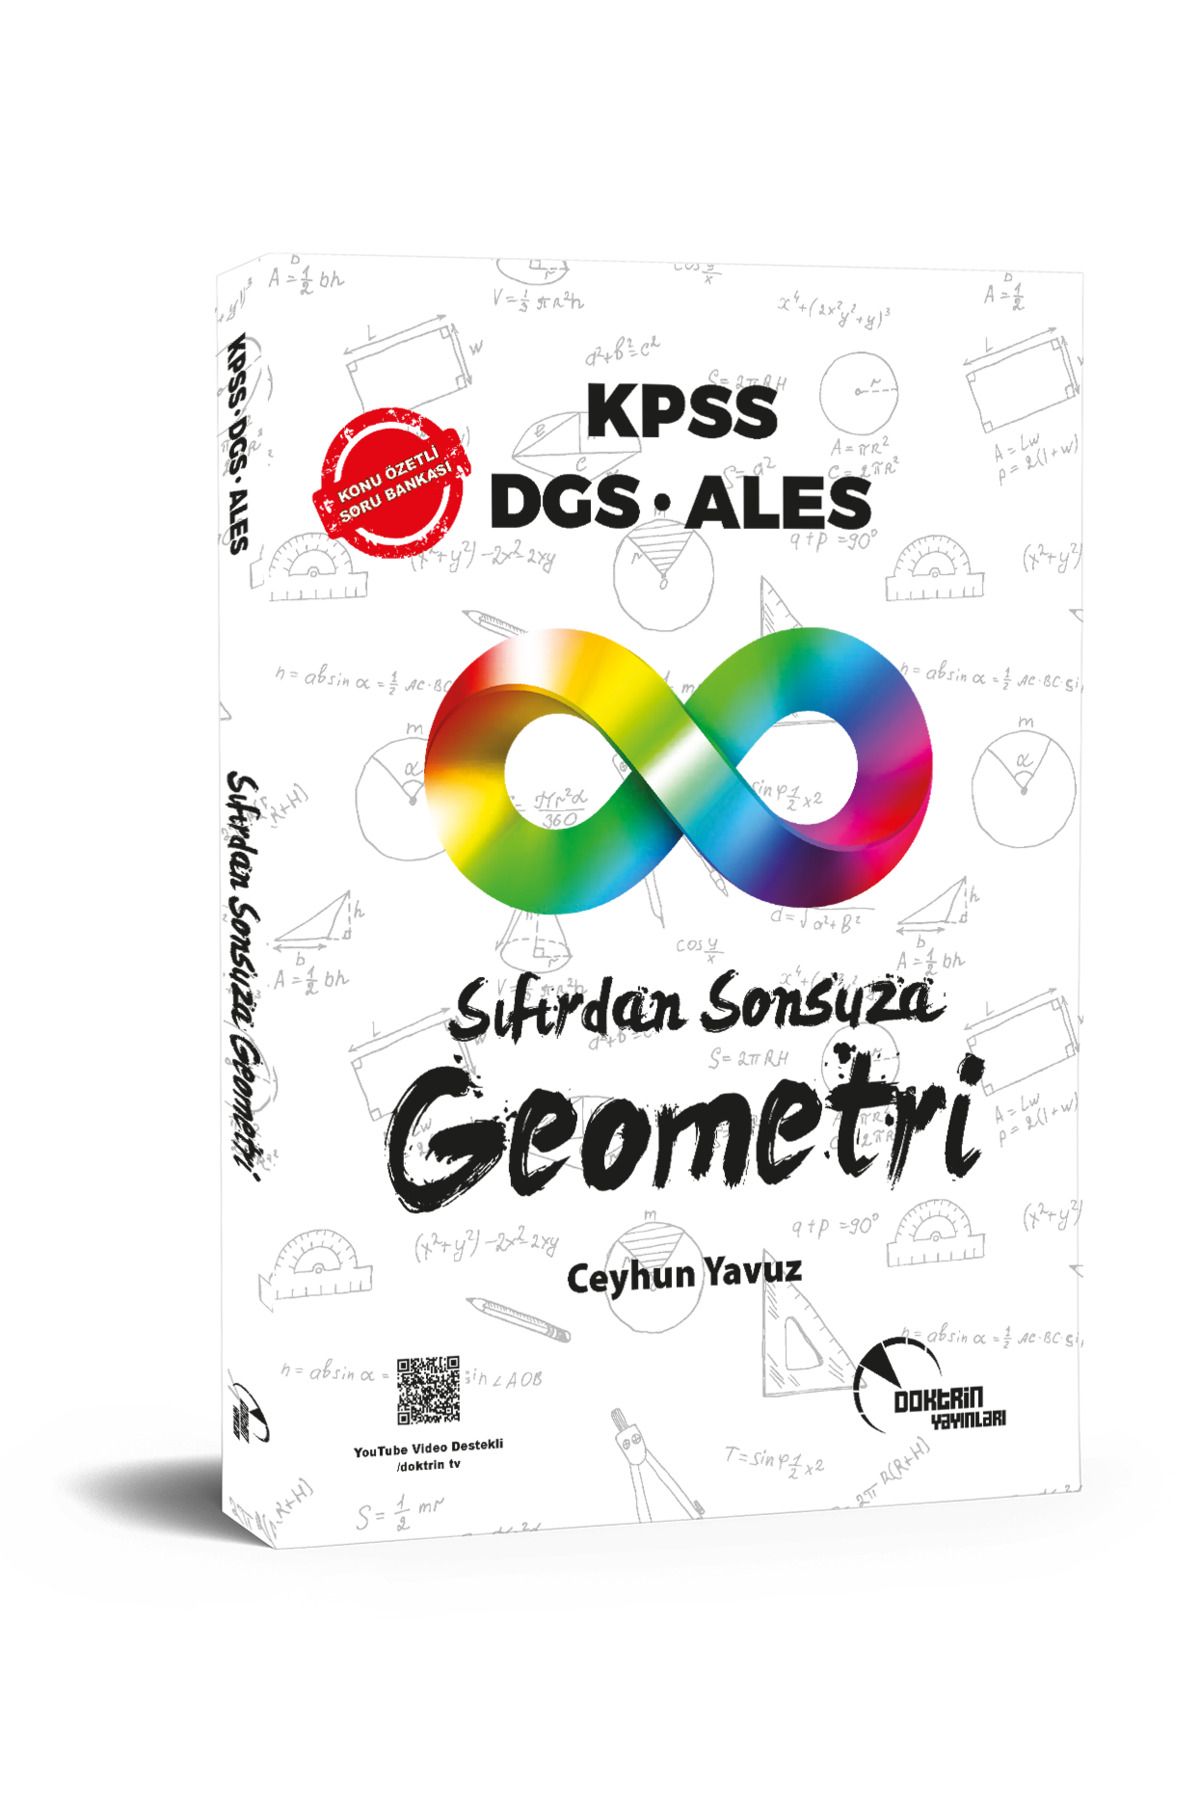 Doktrin Yayınları KPSS DGS ALES Sıfırdan Sonsuza Geometri Doktrin Yayınları